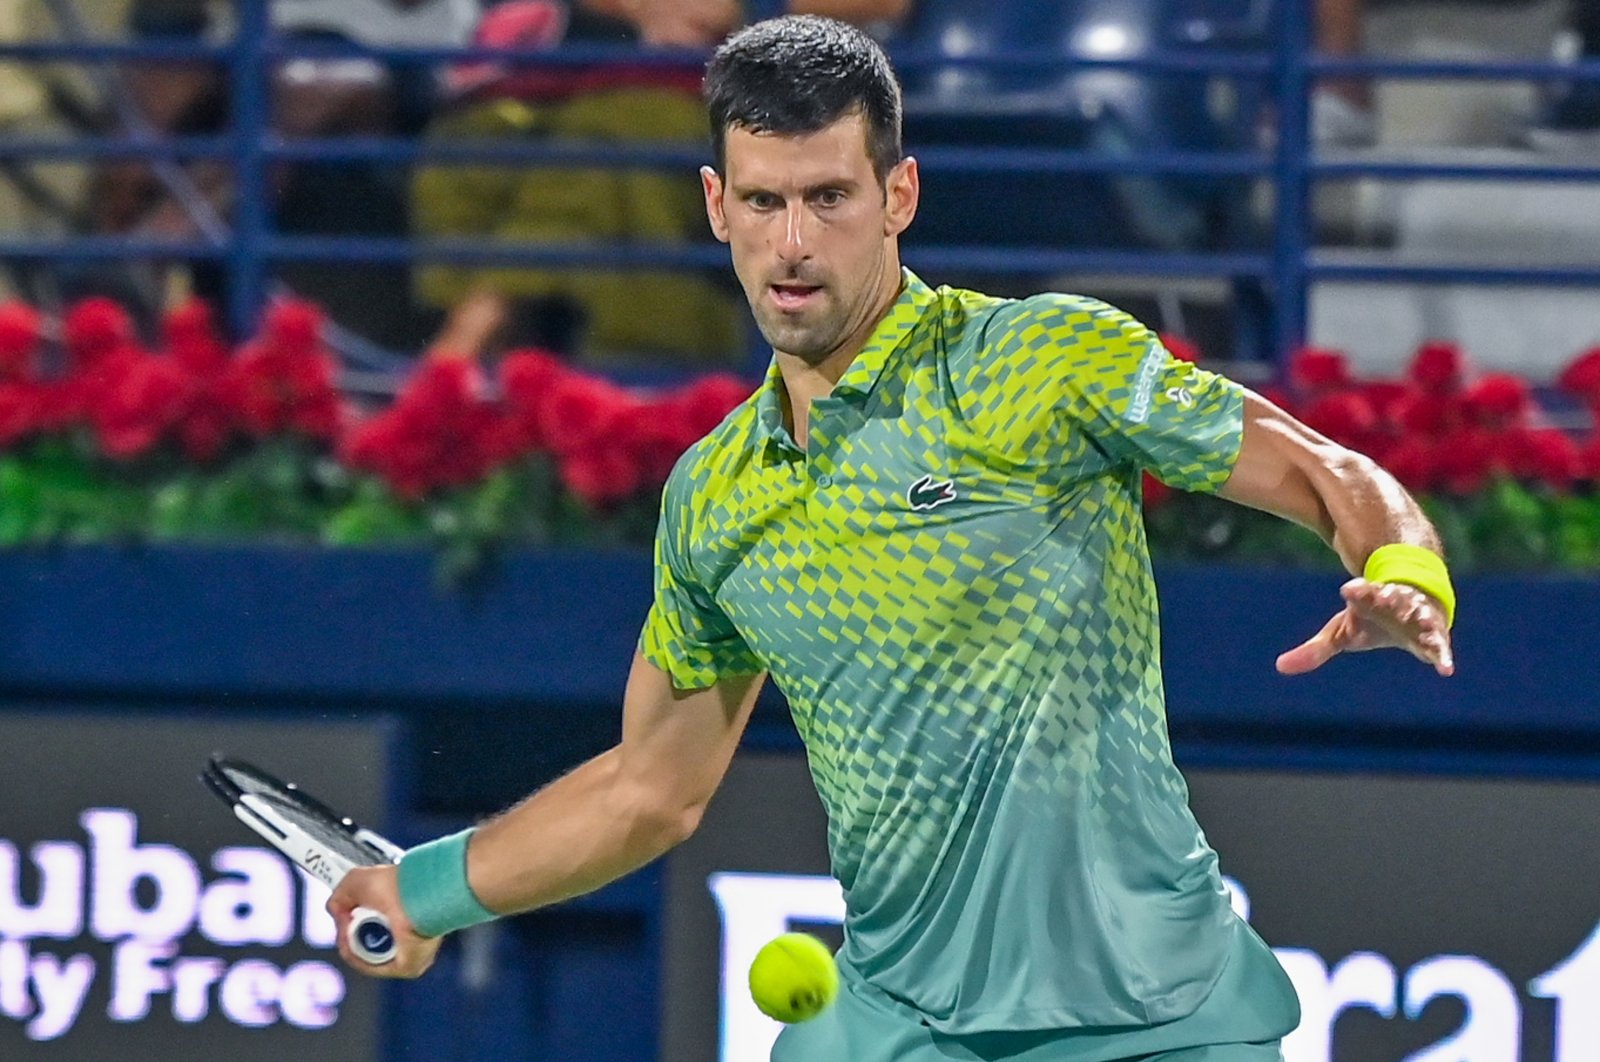 AS Terbuka optimis tentang partisipasi Djokovic yang tidak divaksinasi